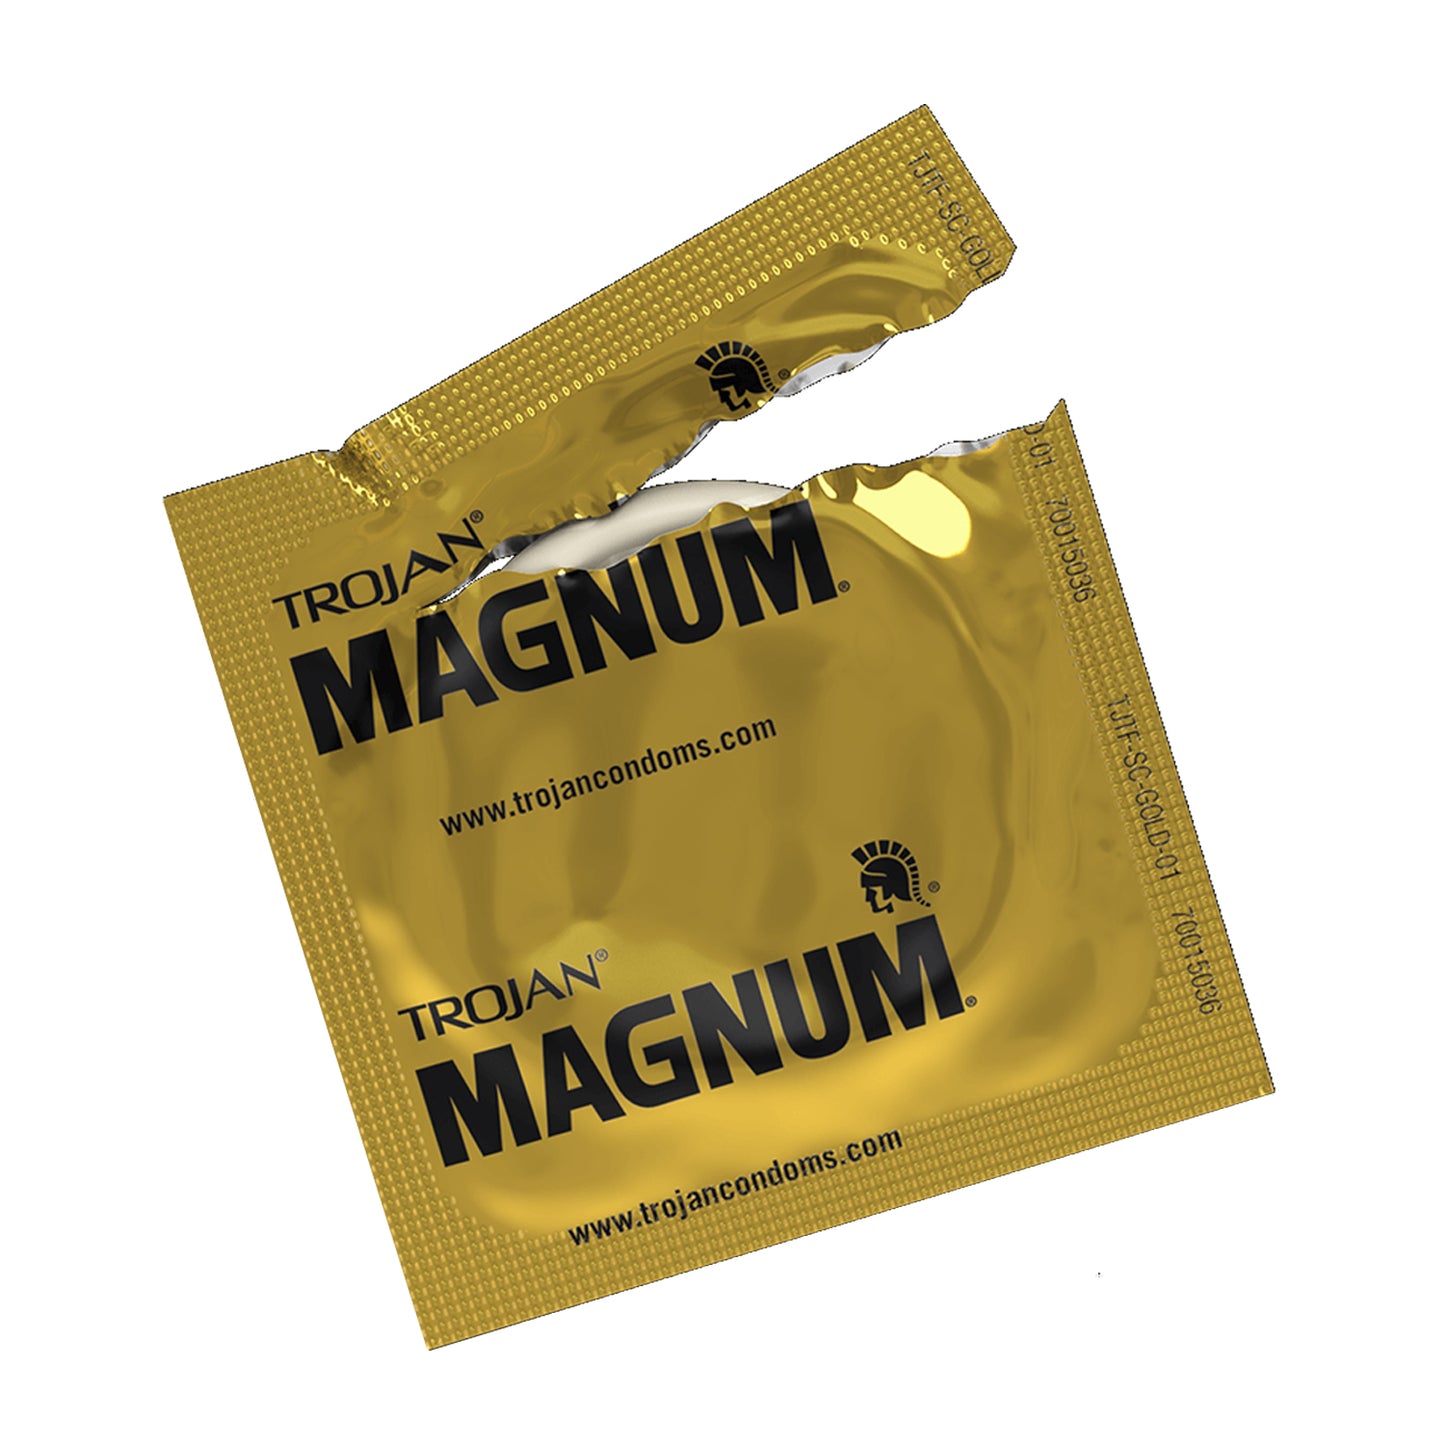 Magnum Thin Large Size Condom